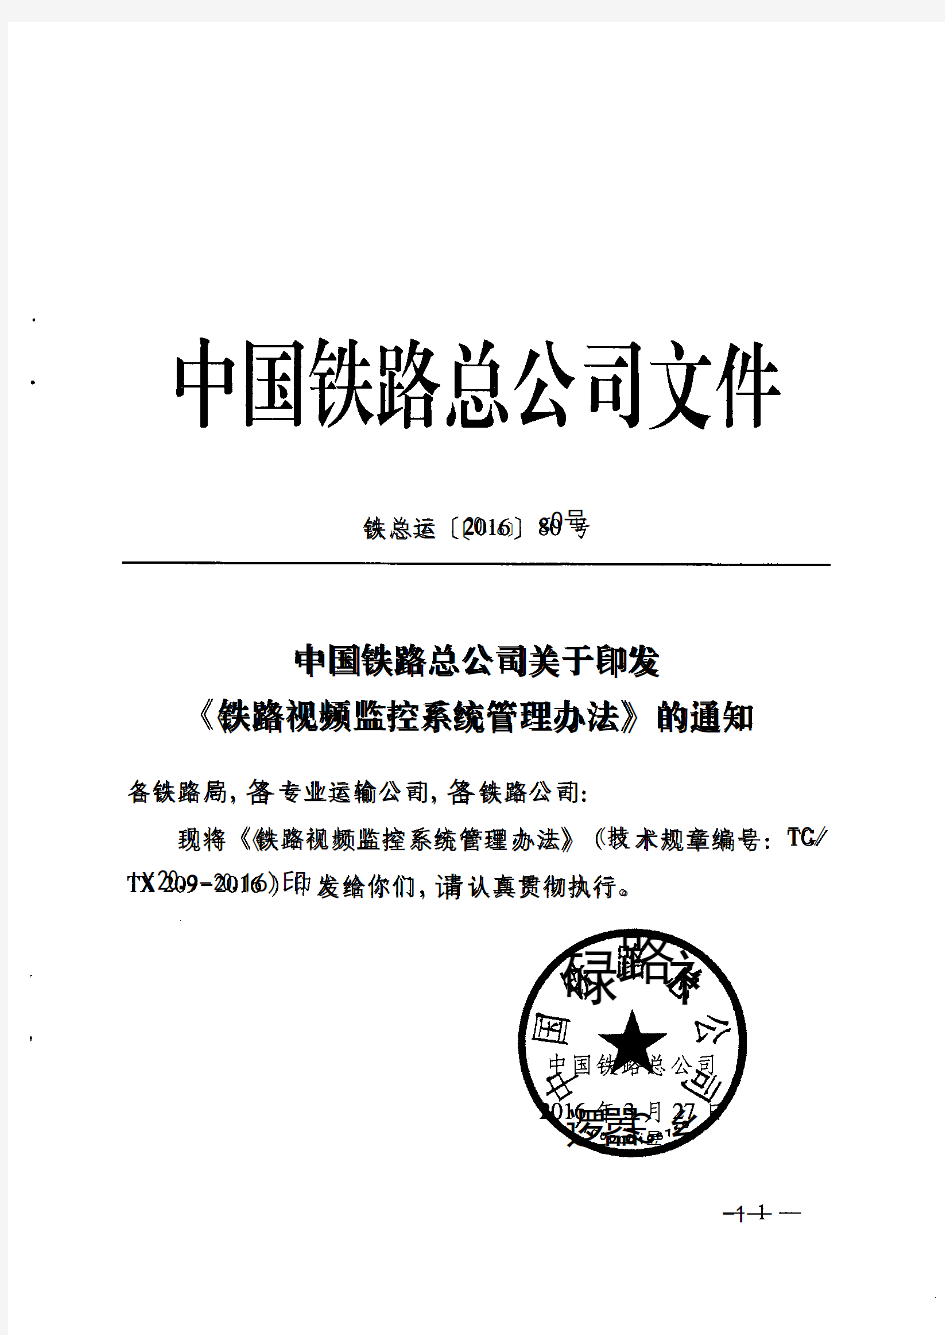 铁总运〔2016〕80号中国铁路总公司关于印发《铁路视频监控系统管理办法》的通知